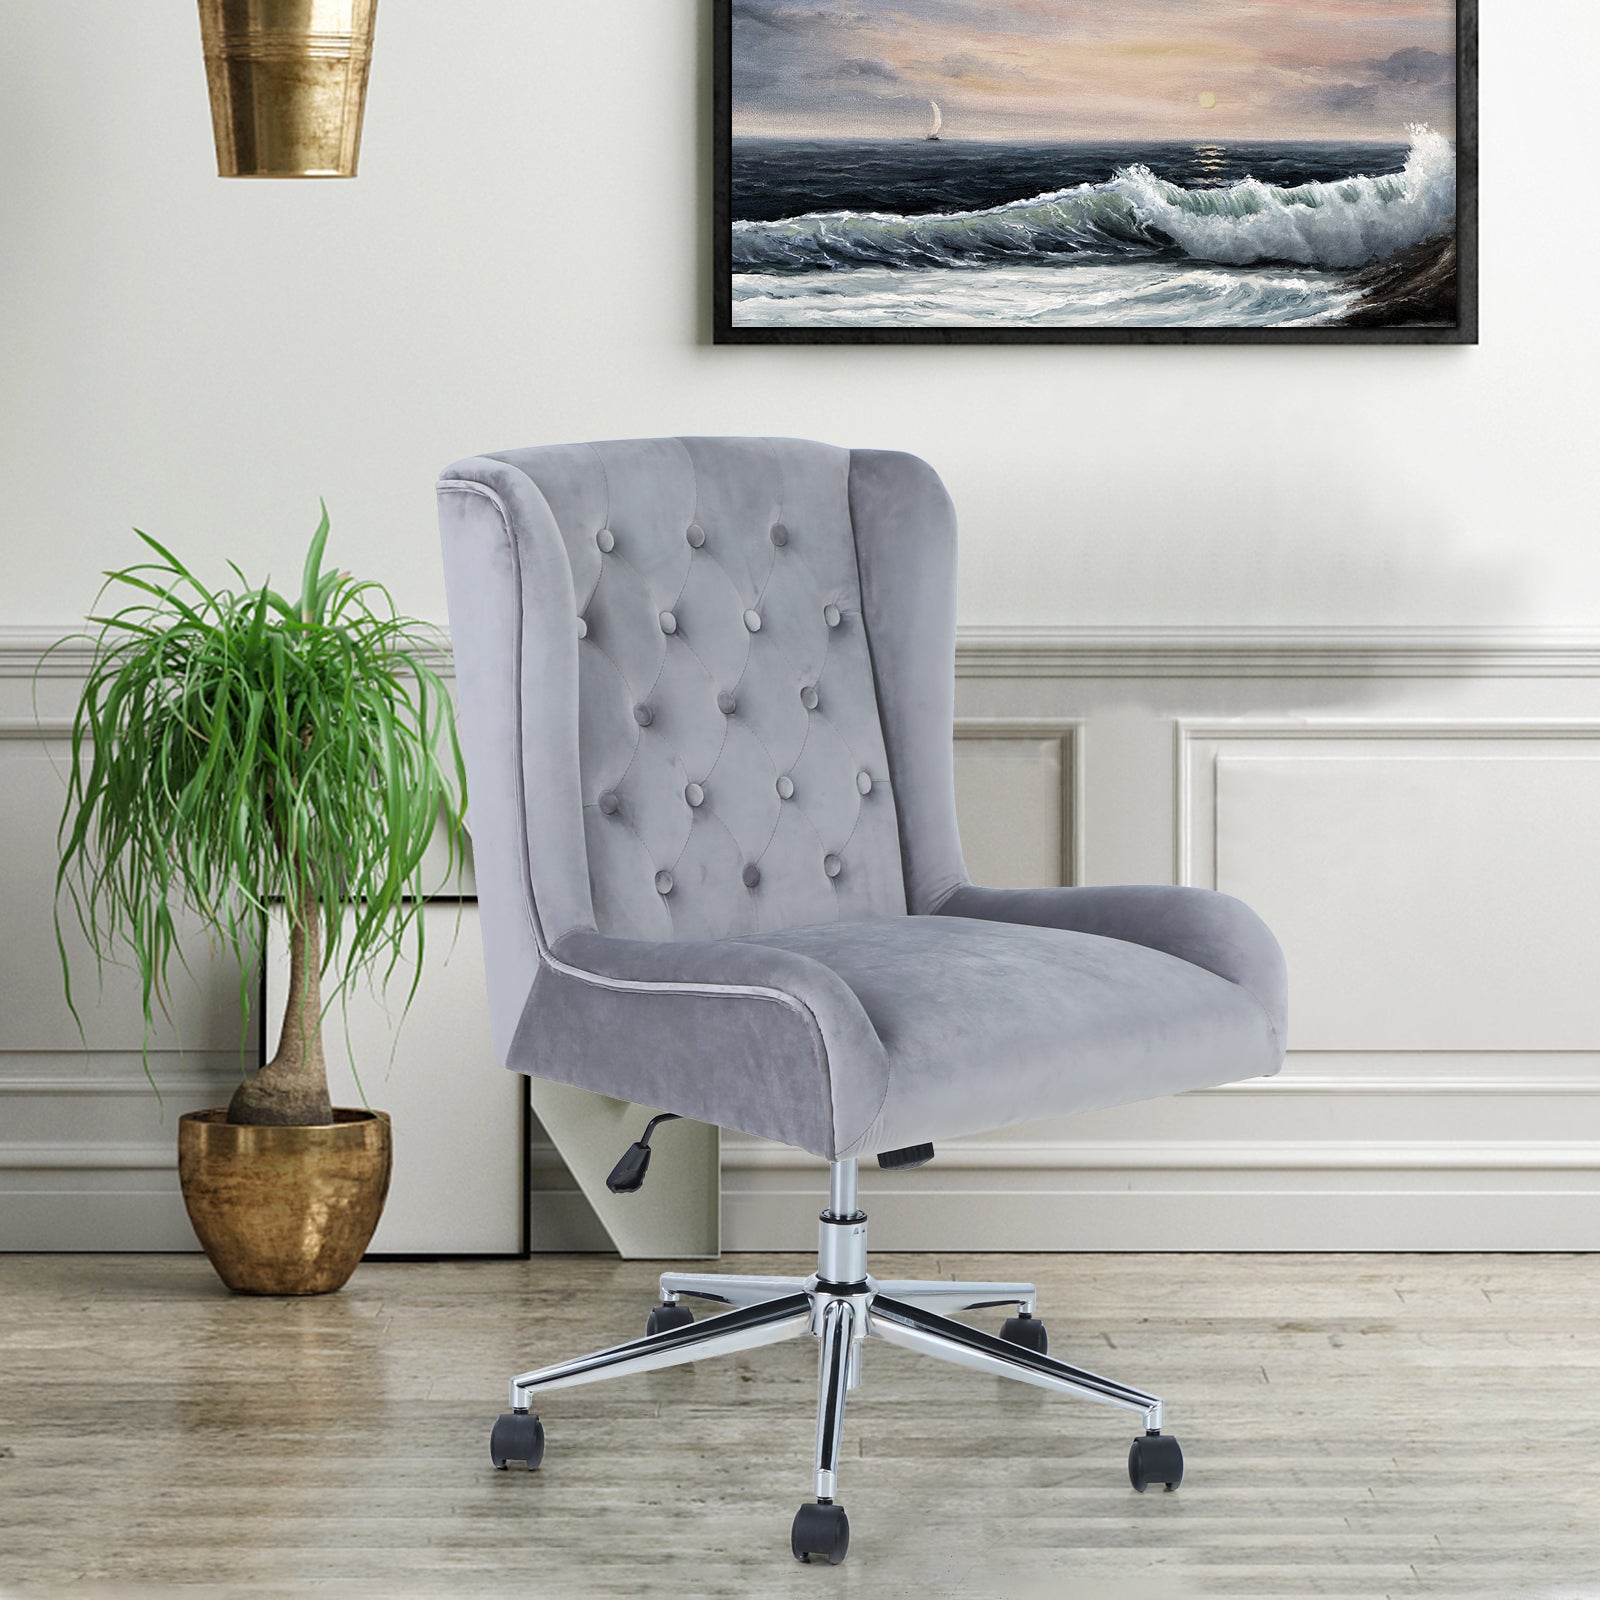 PHI VILLA Adjustable Swivel Velvet Home Rocking Chair for Living Room